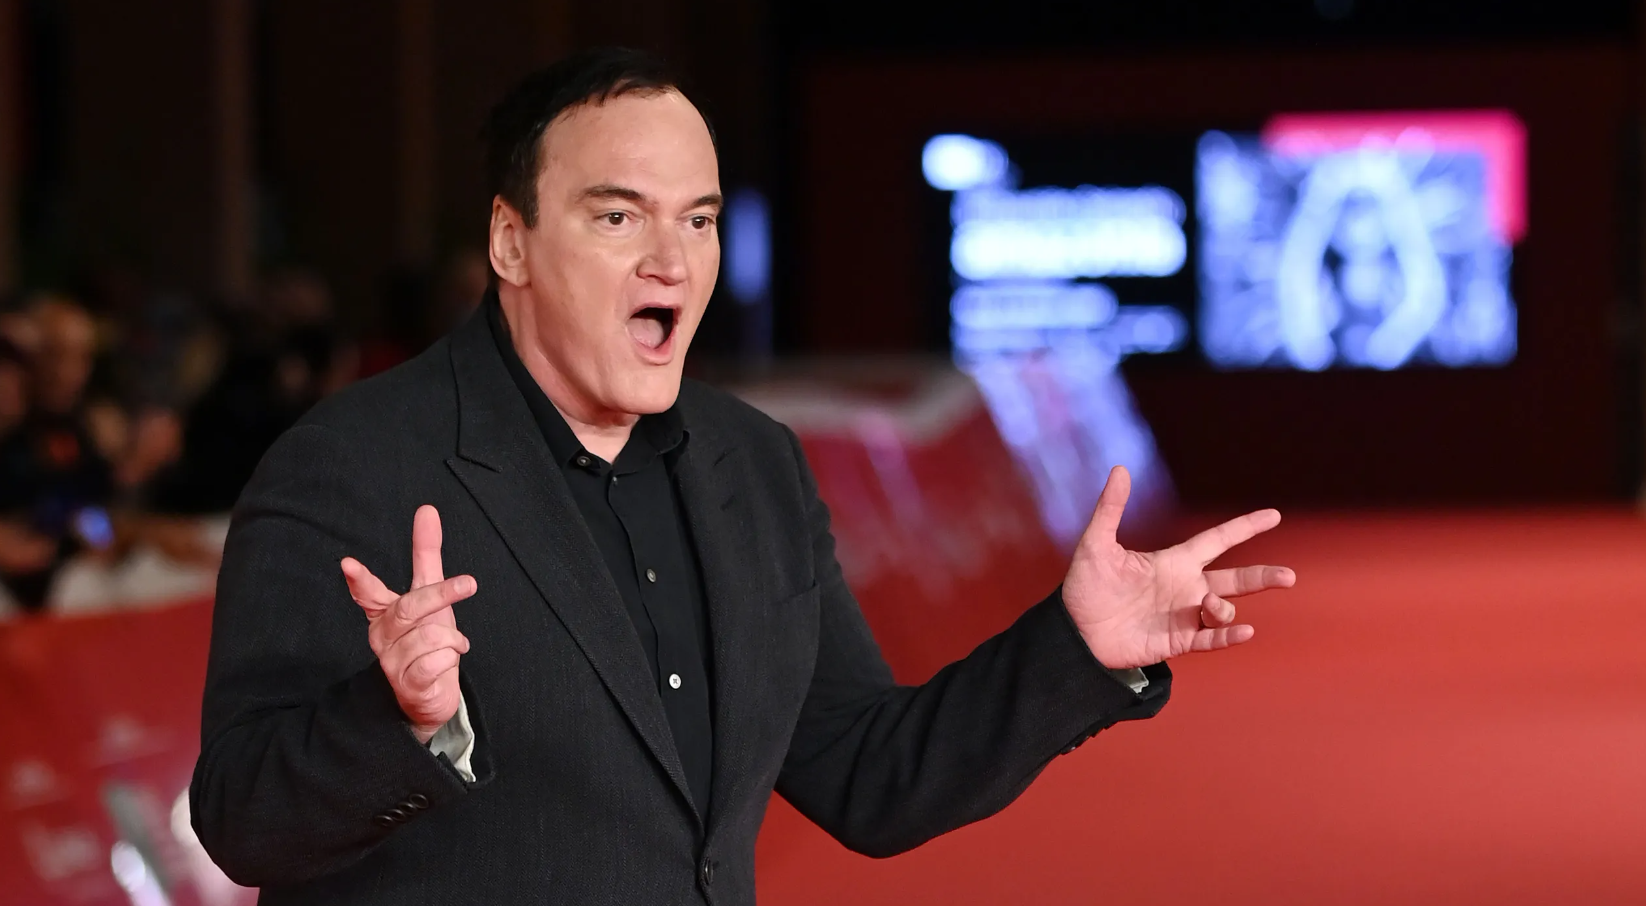 Quentin Tarantino otkrio je za koji svoj film smatra da je najbolji. Ali je također je jasno dao do znanja kakvi su njegovi prioriteti